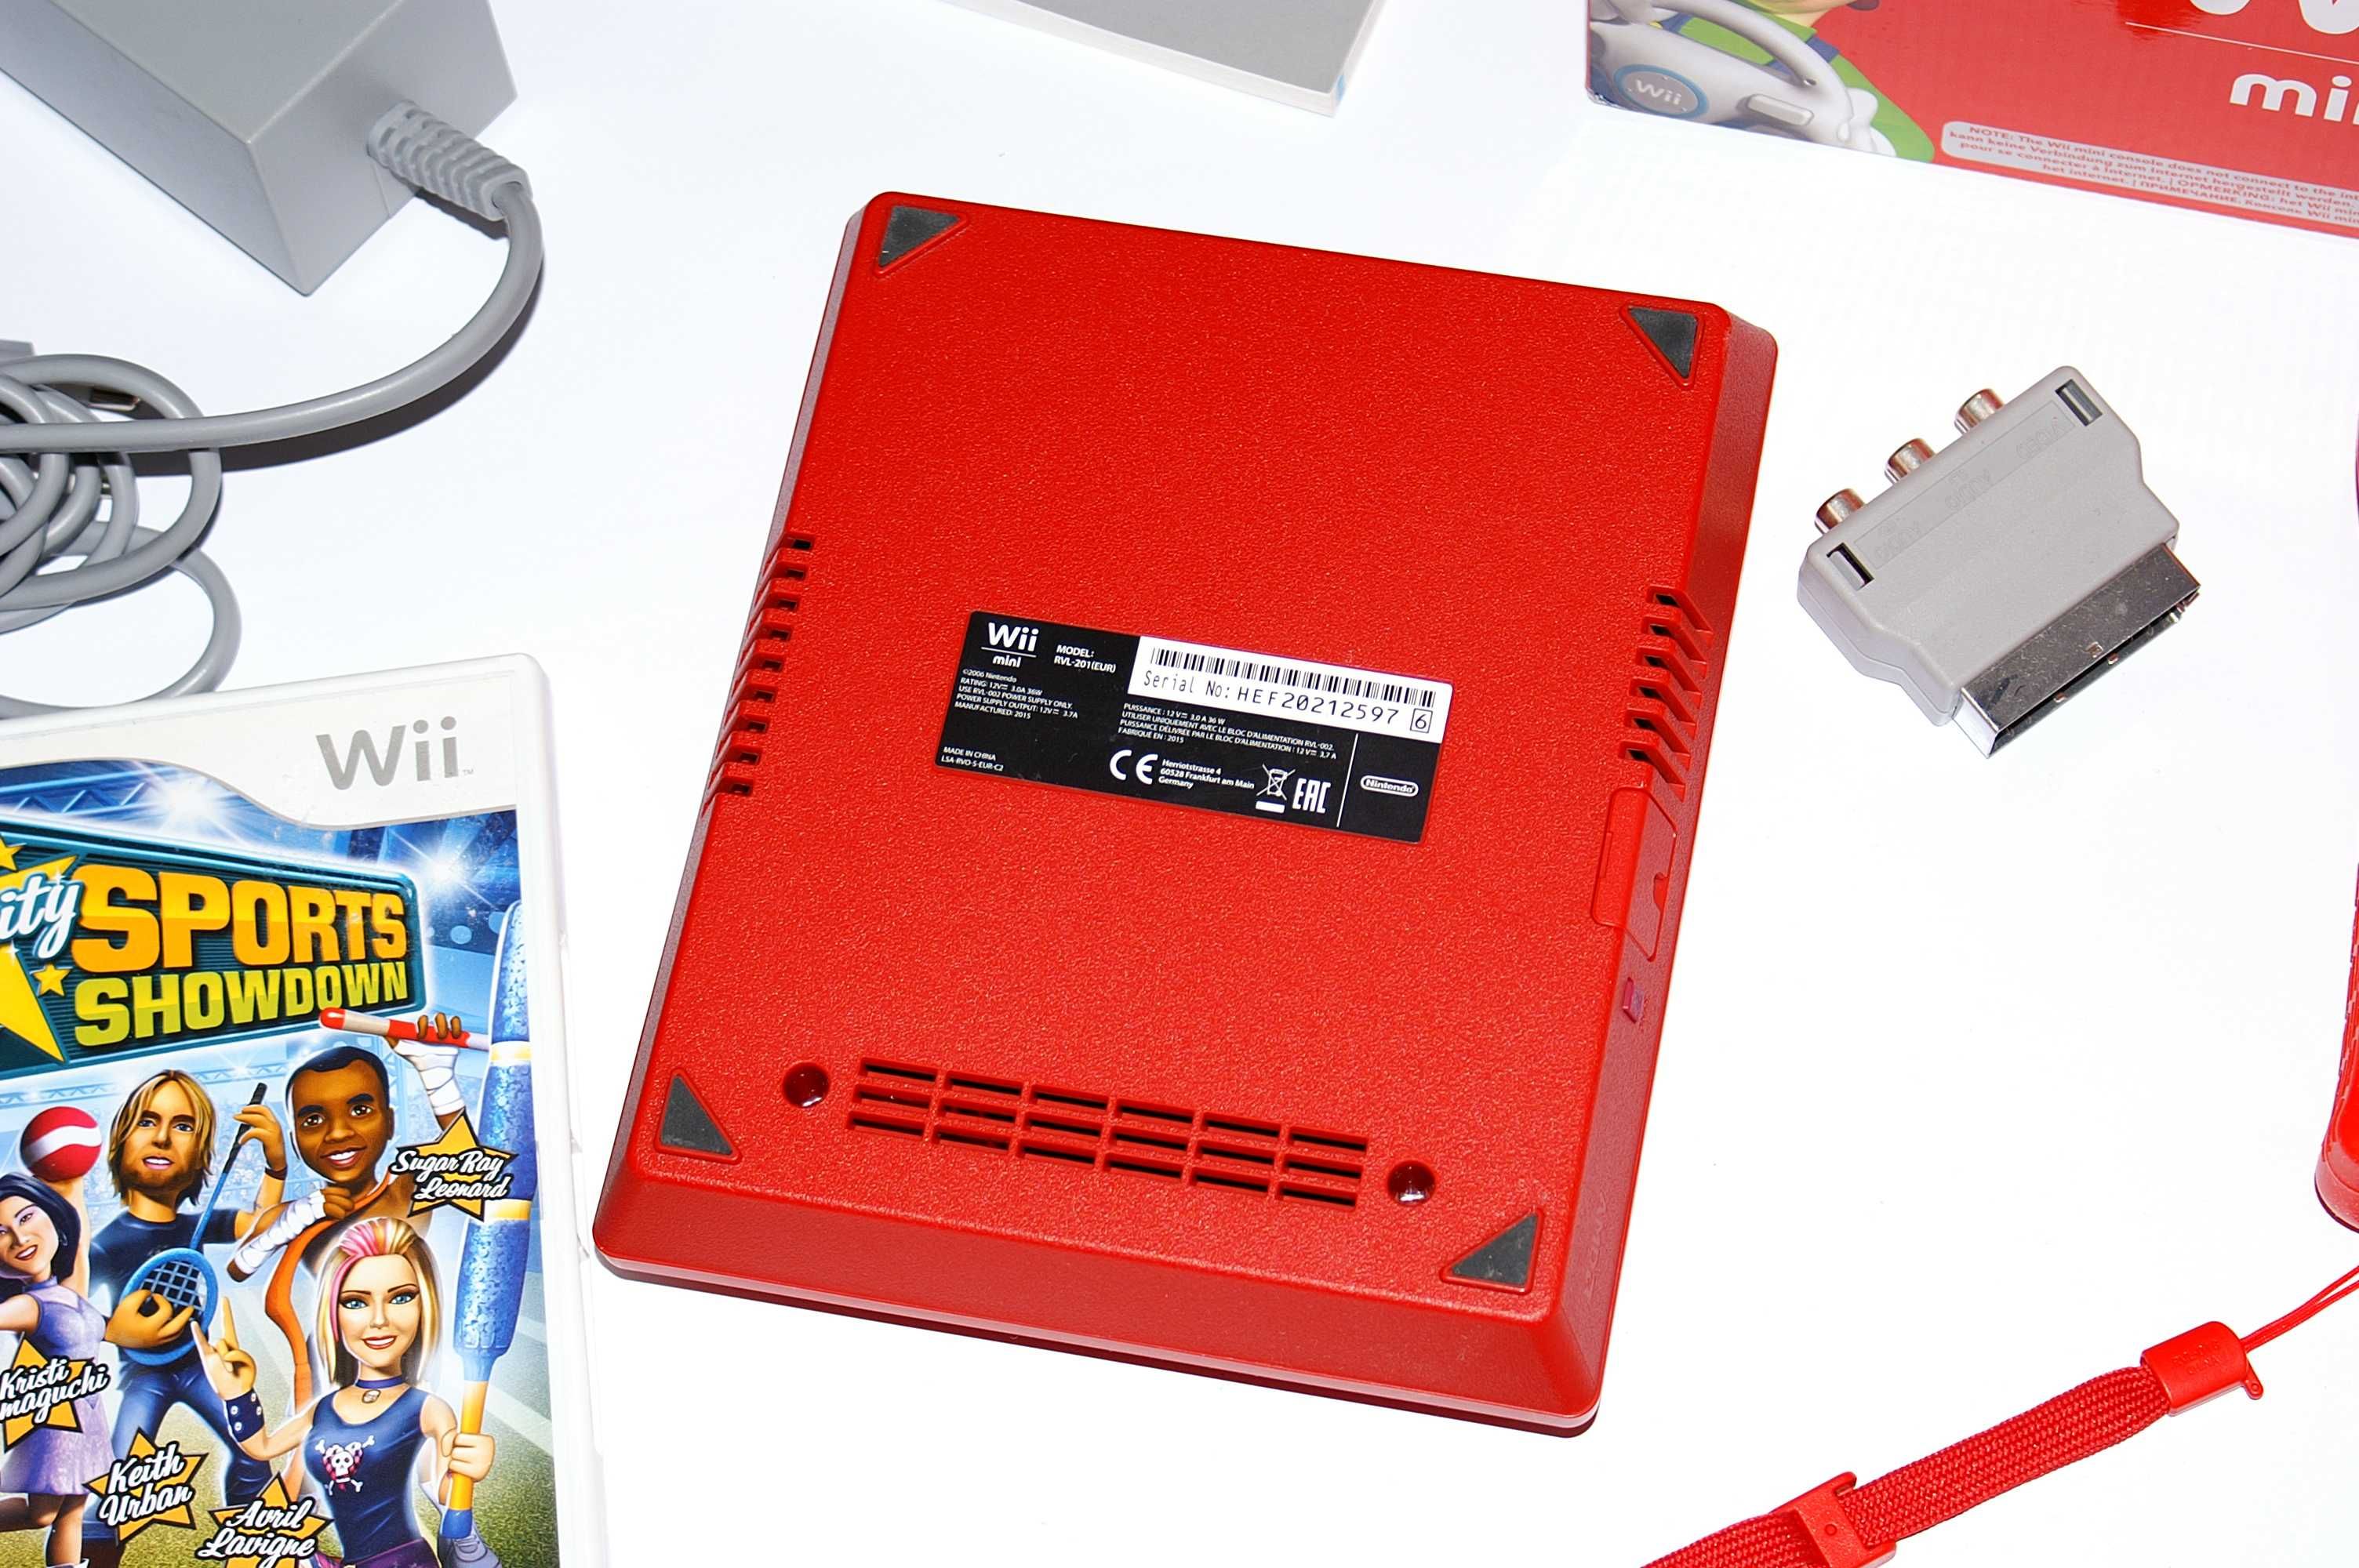 Nintendo Wii Mini пълен комплект Нинтендо мини + подарък игра